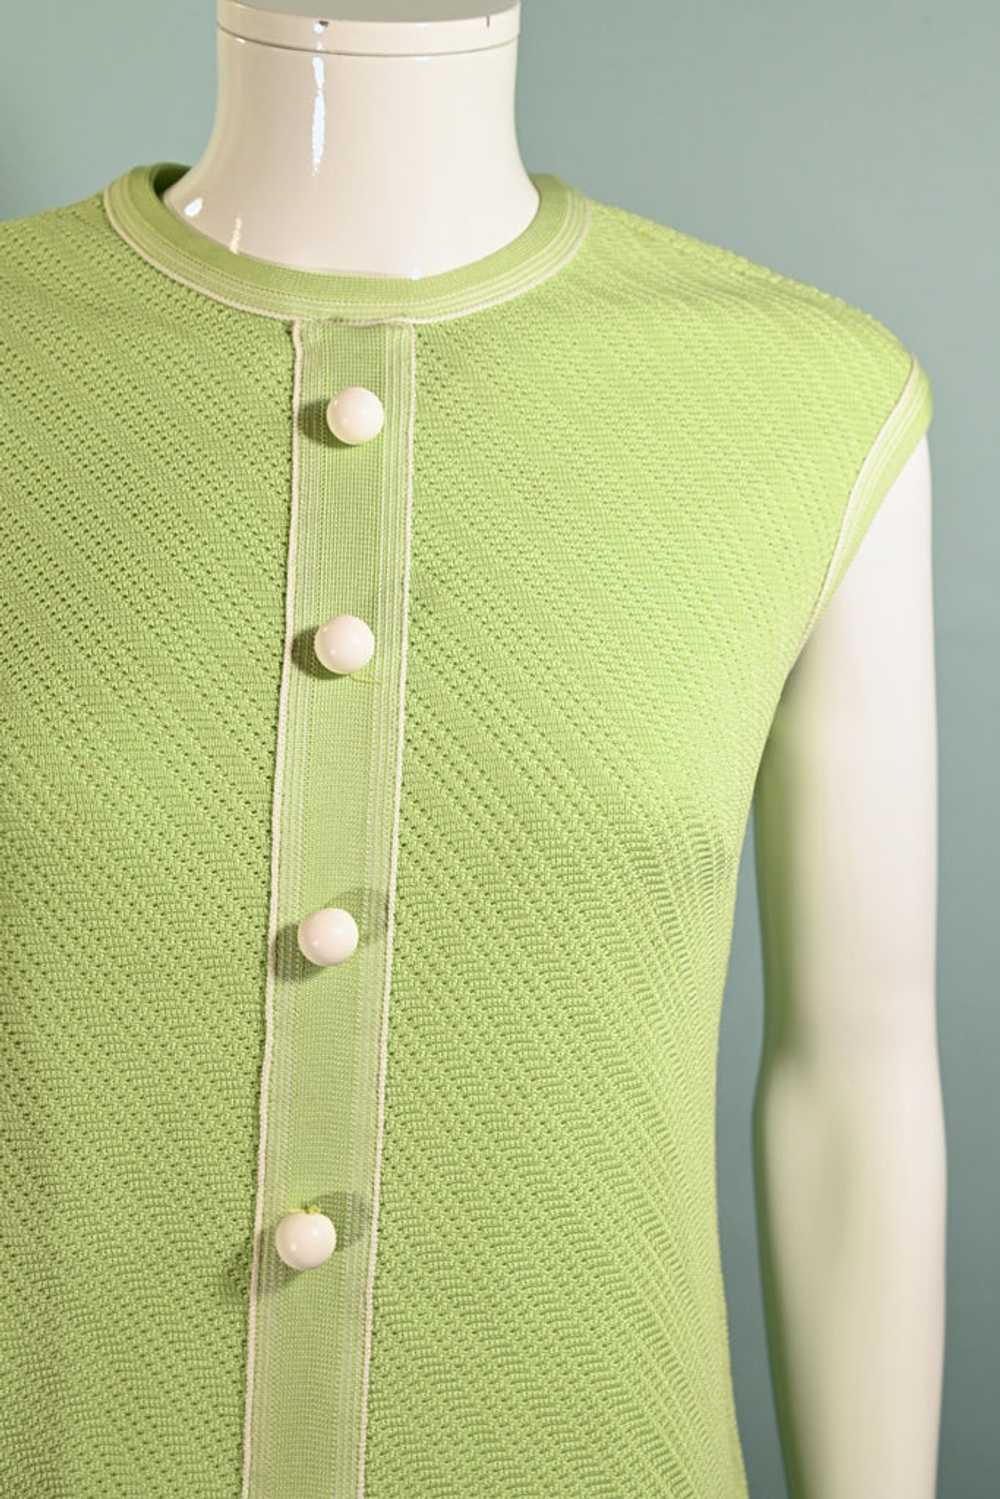 Vintage 60s Mint Green Mod A Line Dress M - image 2